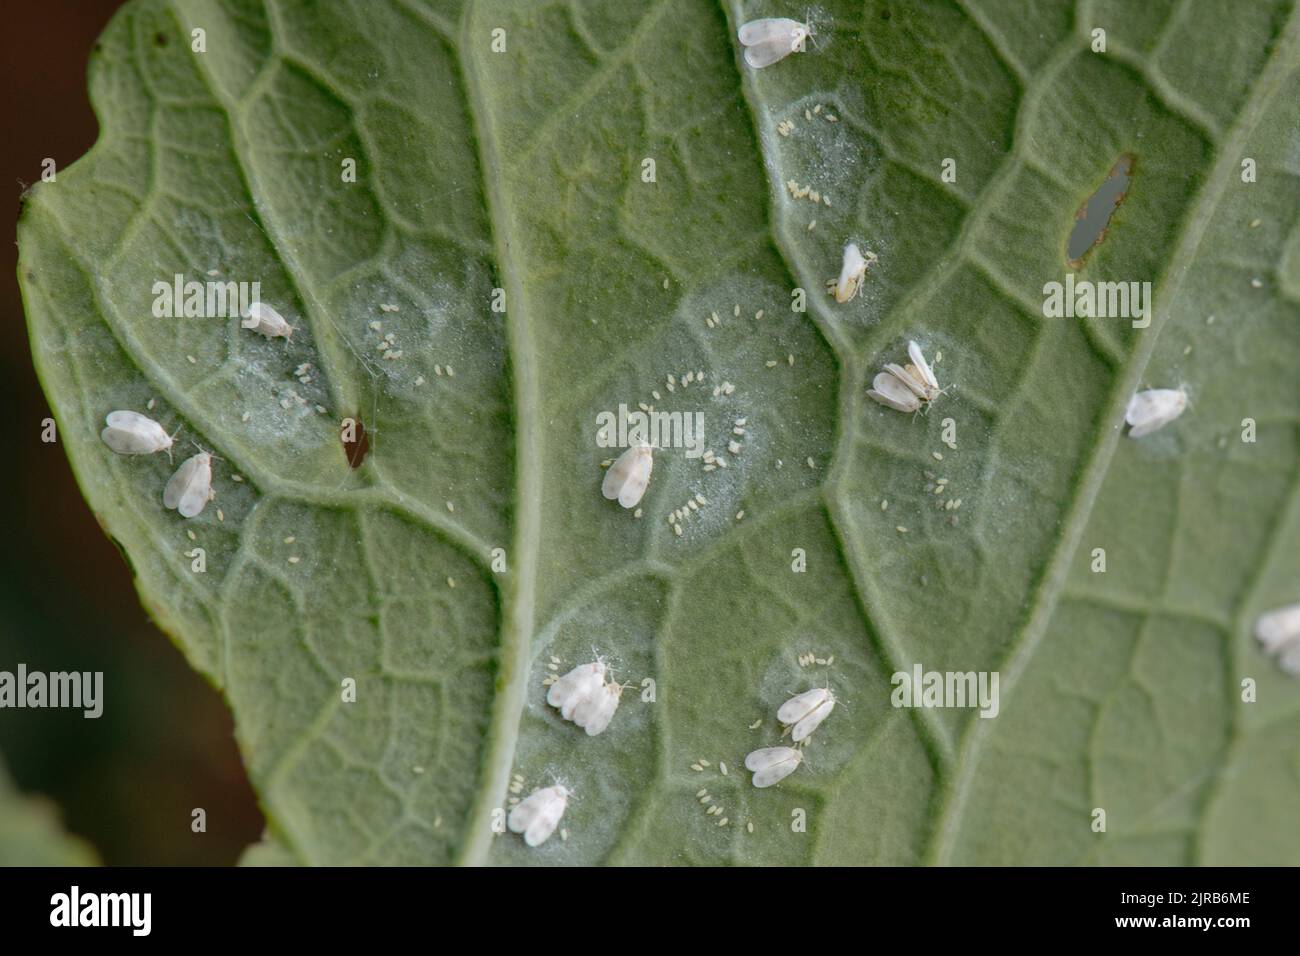 Repollo mosca blanca (Aleyrodes proletella) adultos y círculos de huevos en la parte inferior de la hoja de brócoli púrpura que brota, Berkshire, agosto Foto de stock